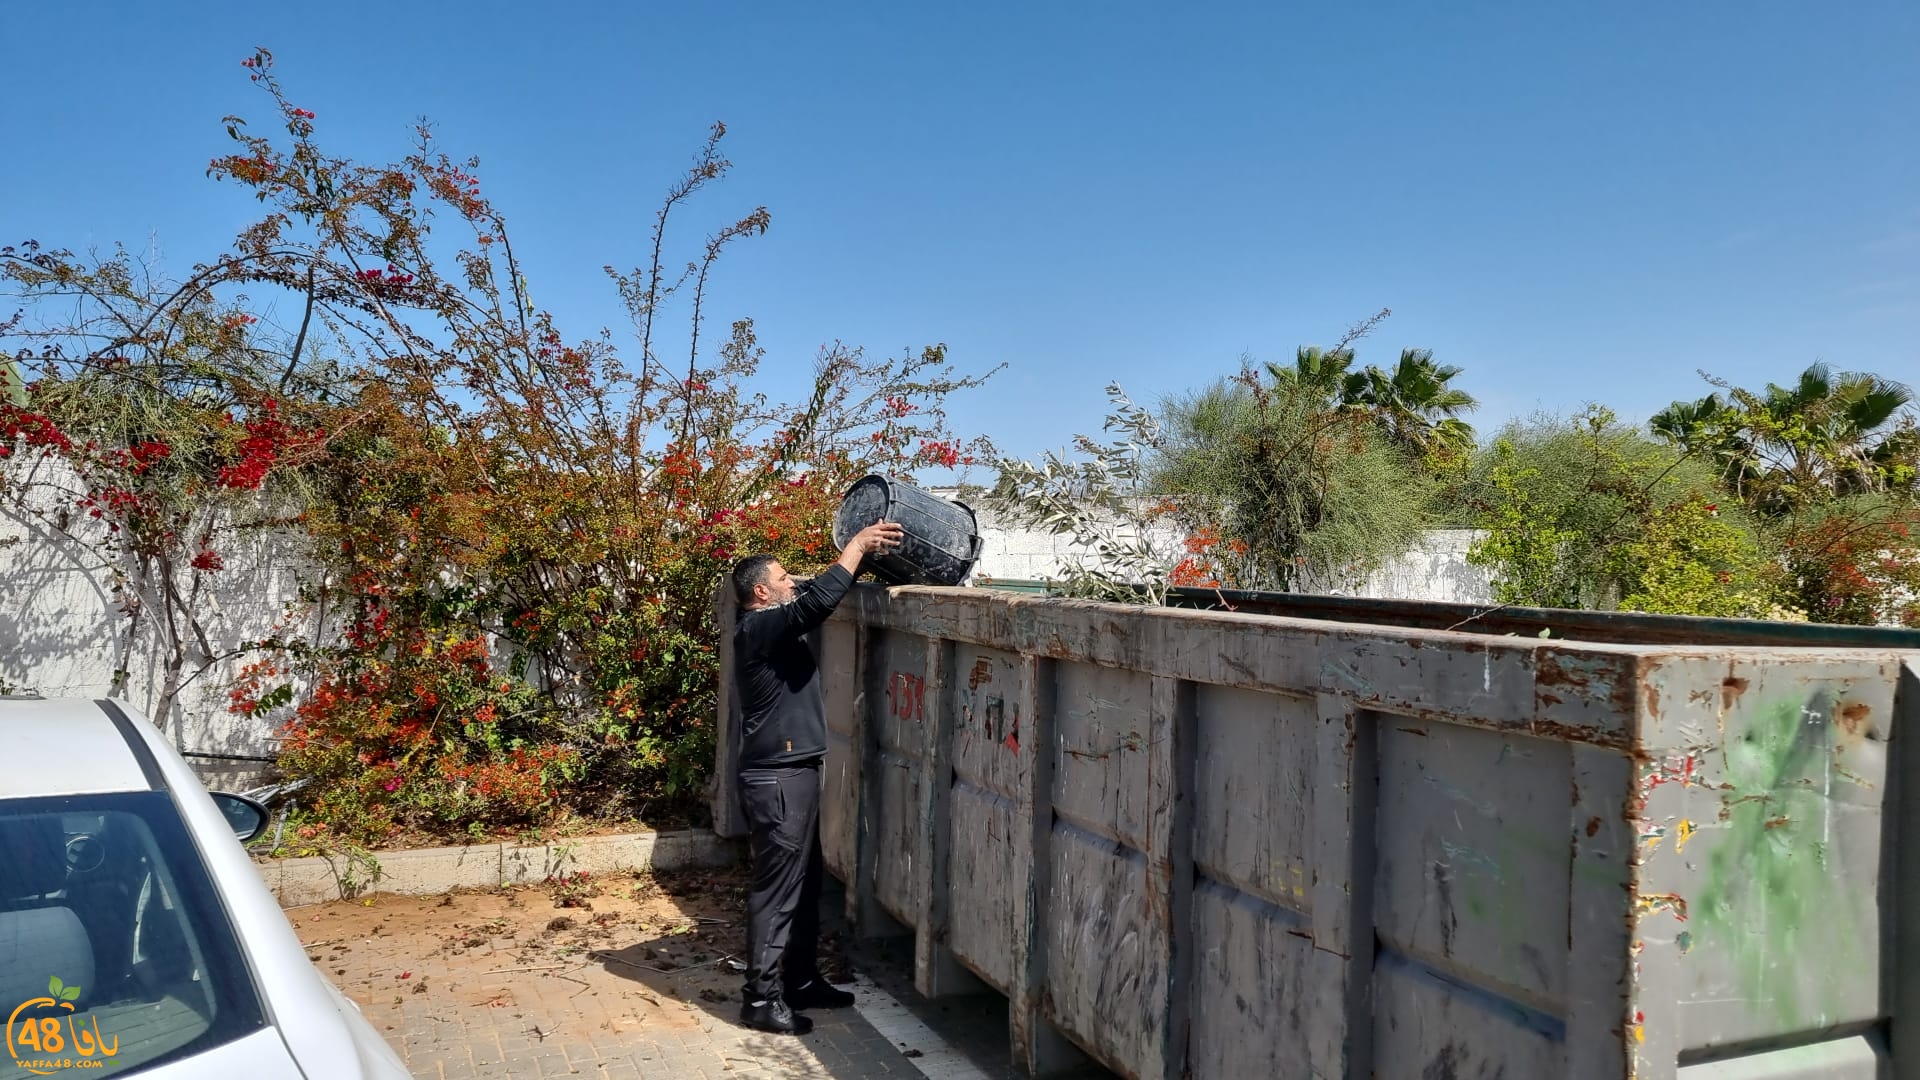 يافا: لجنة اكرام الميت تُنظم حملة لتنظيف مقبرة طاسو 